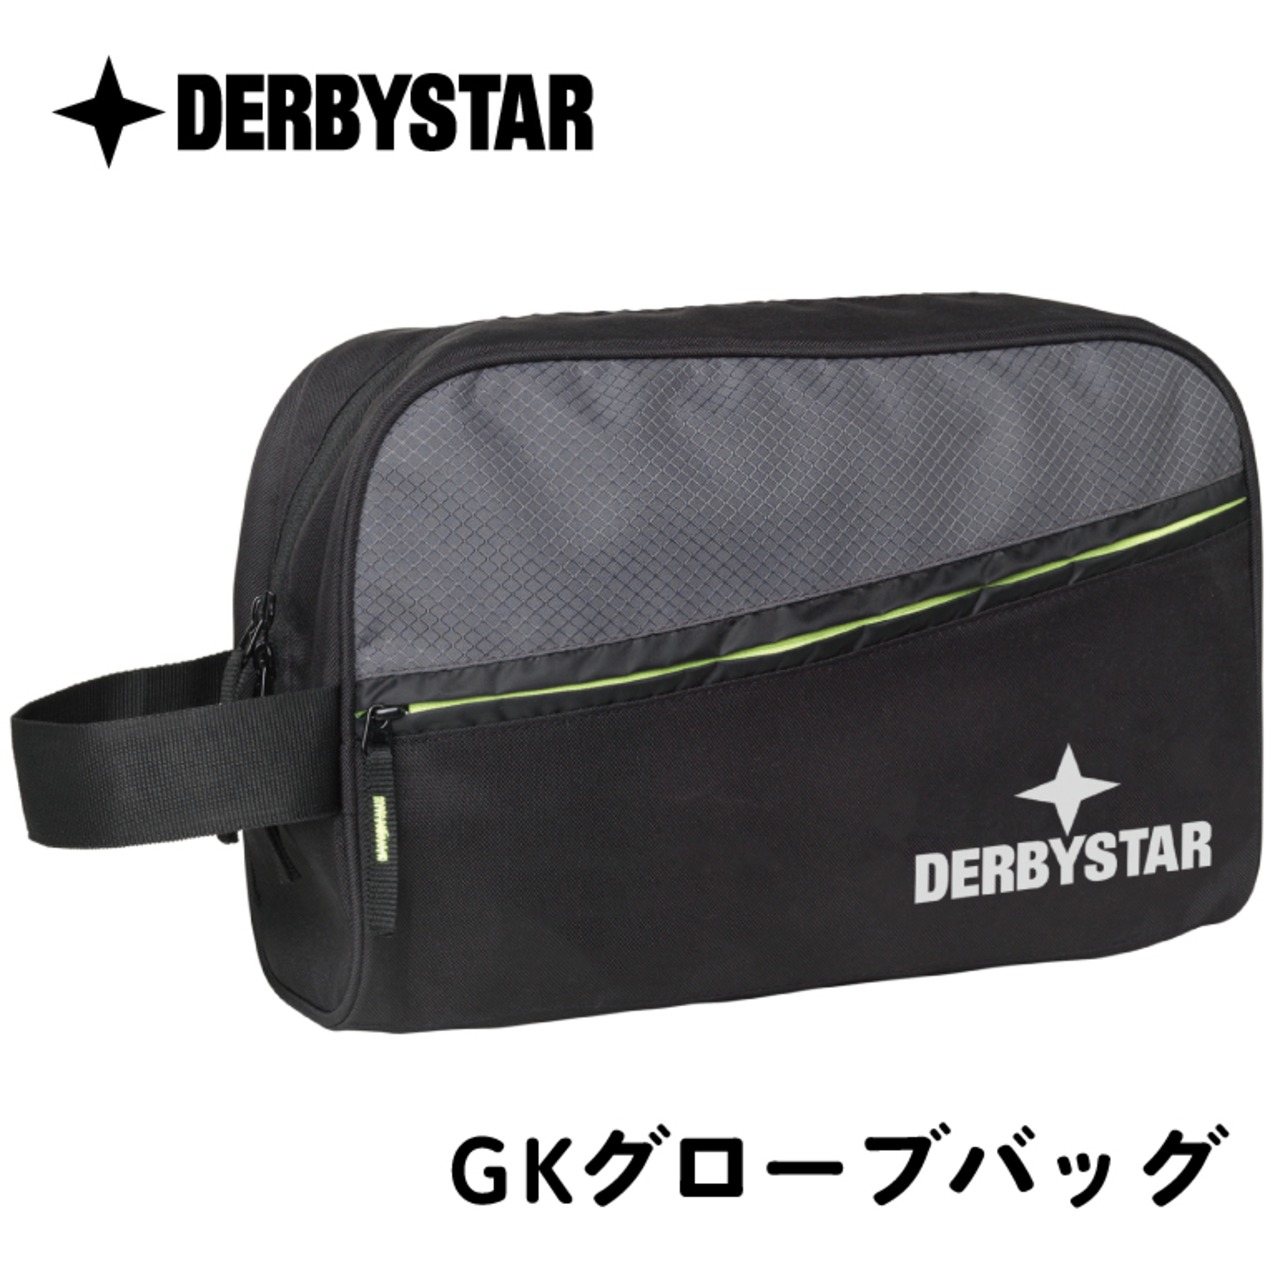 【公式】DERBYSTAR(ダービースター) キーパーグローブバッグ GOALKEEPER GLOVE BAG